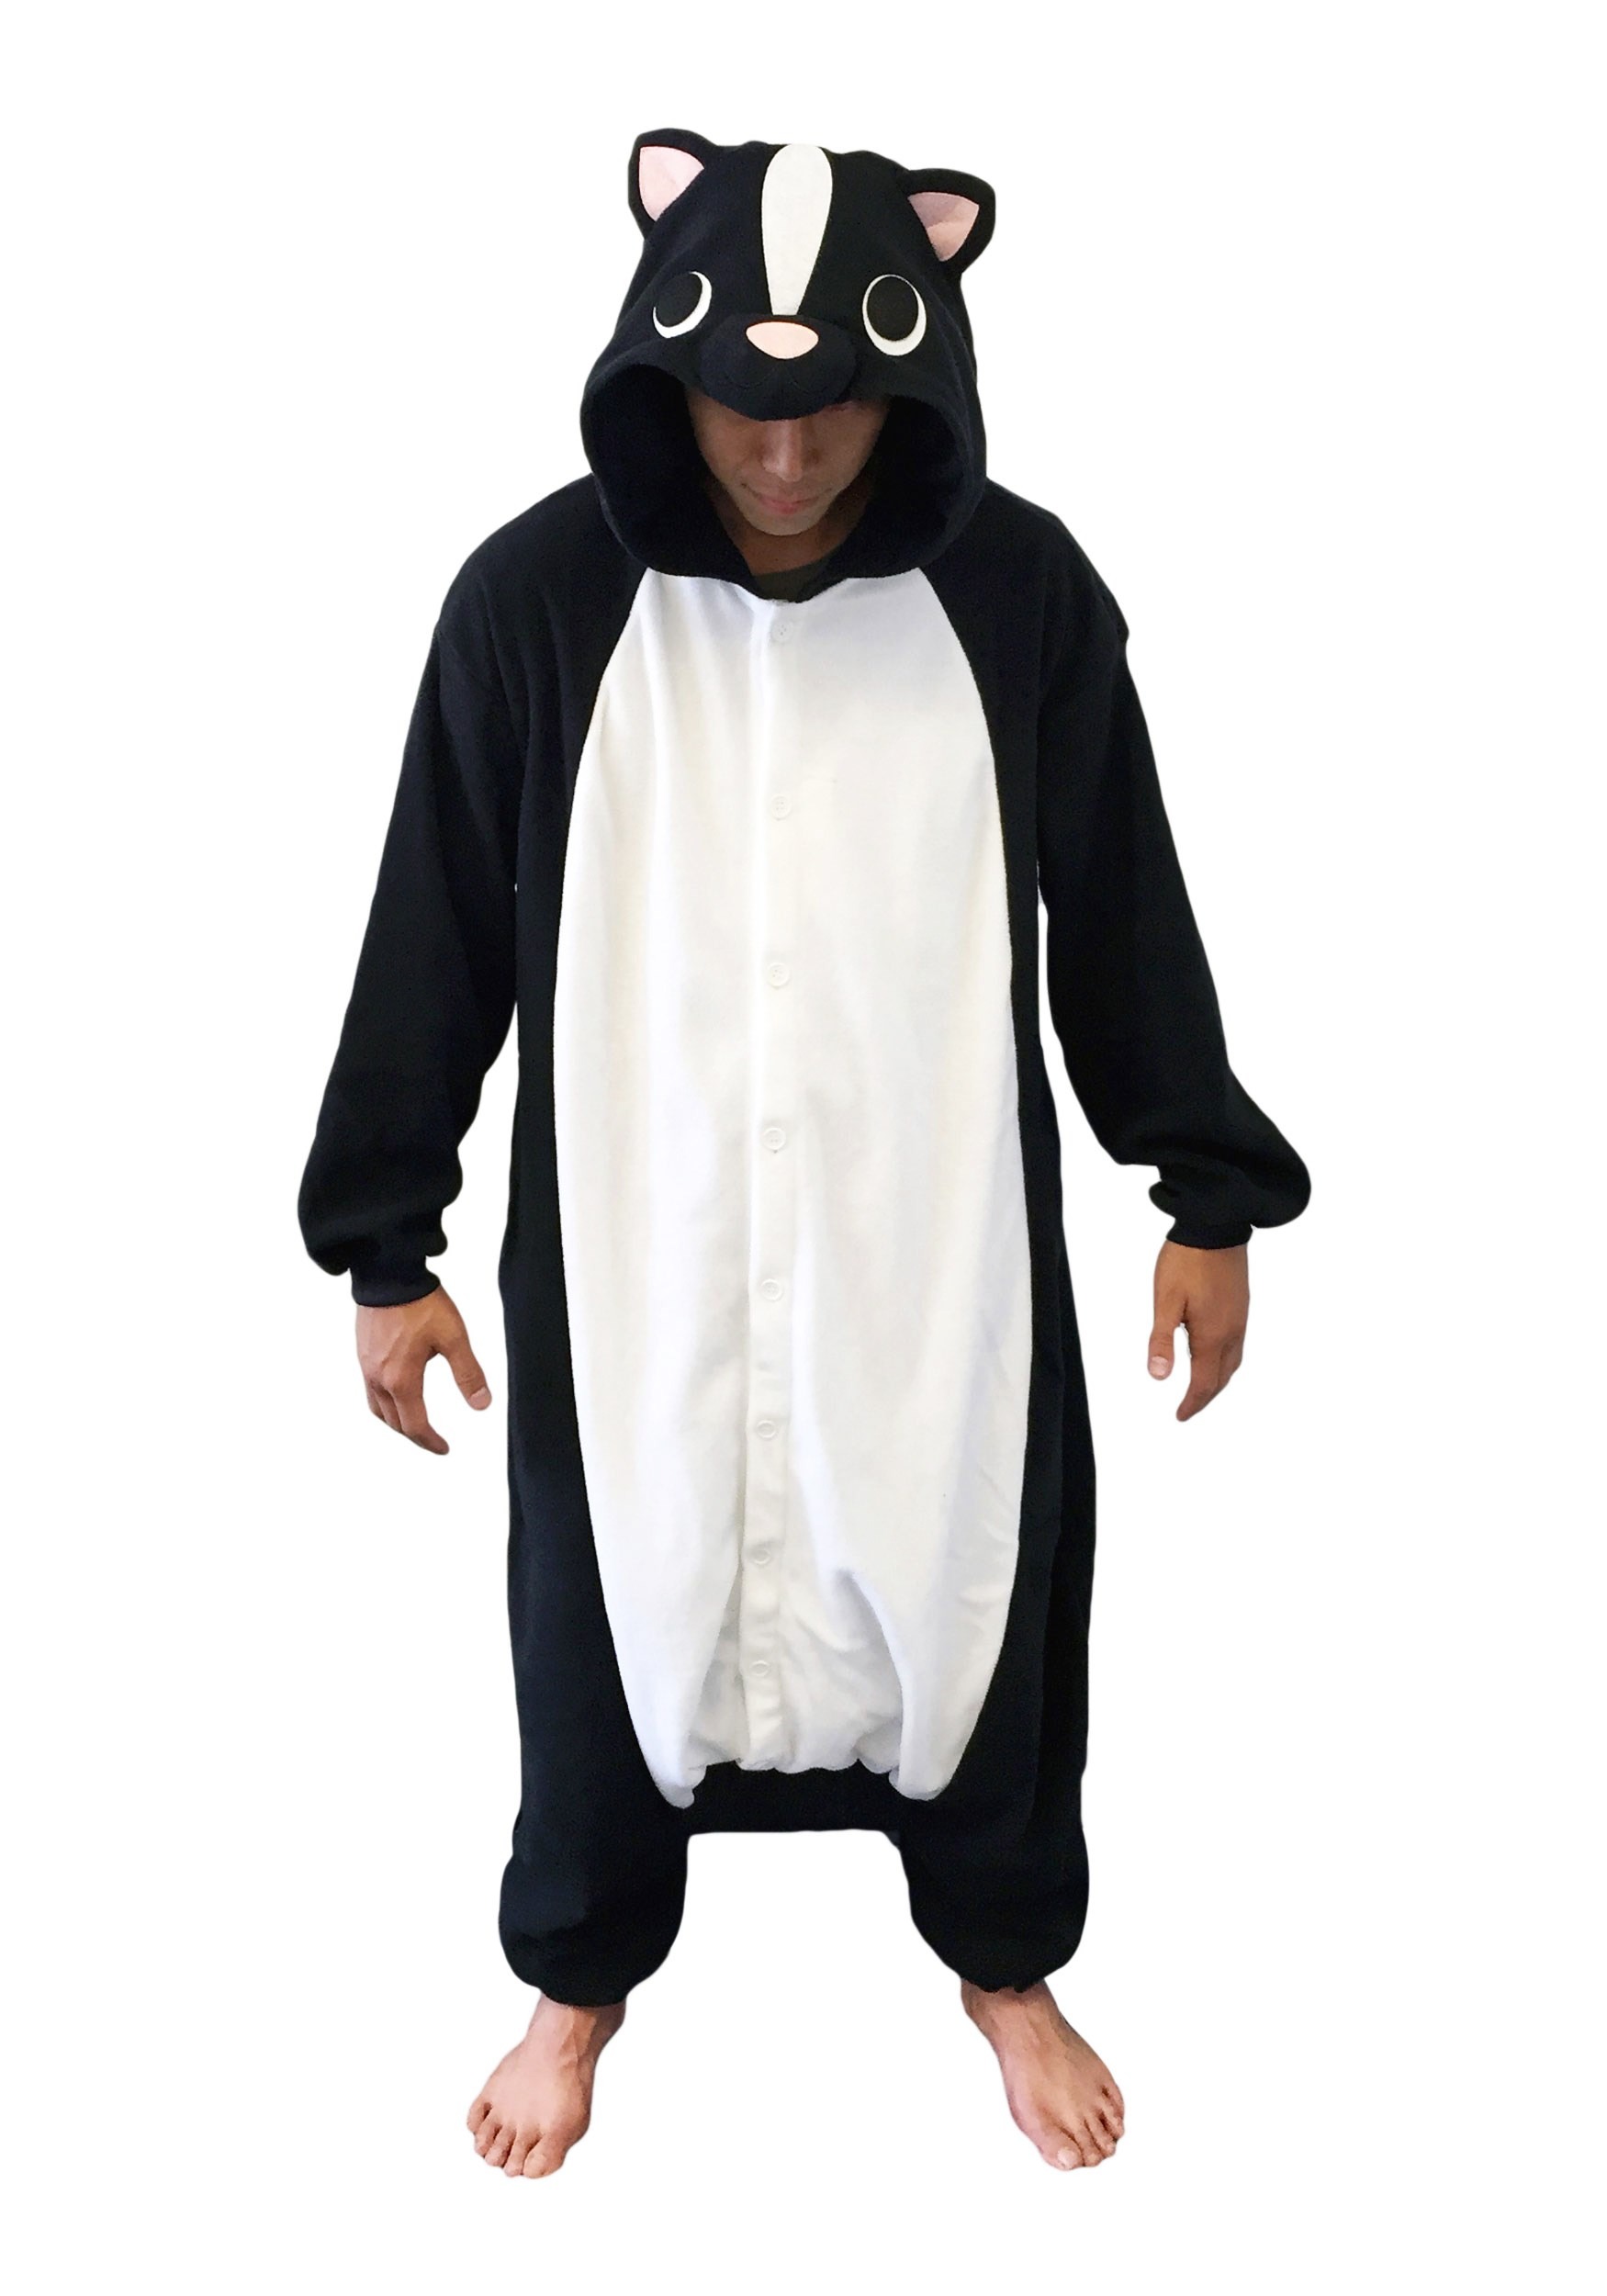 Adult Skunk Kigurumi Costume